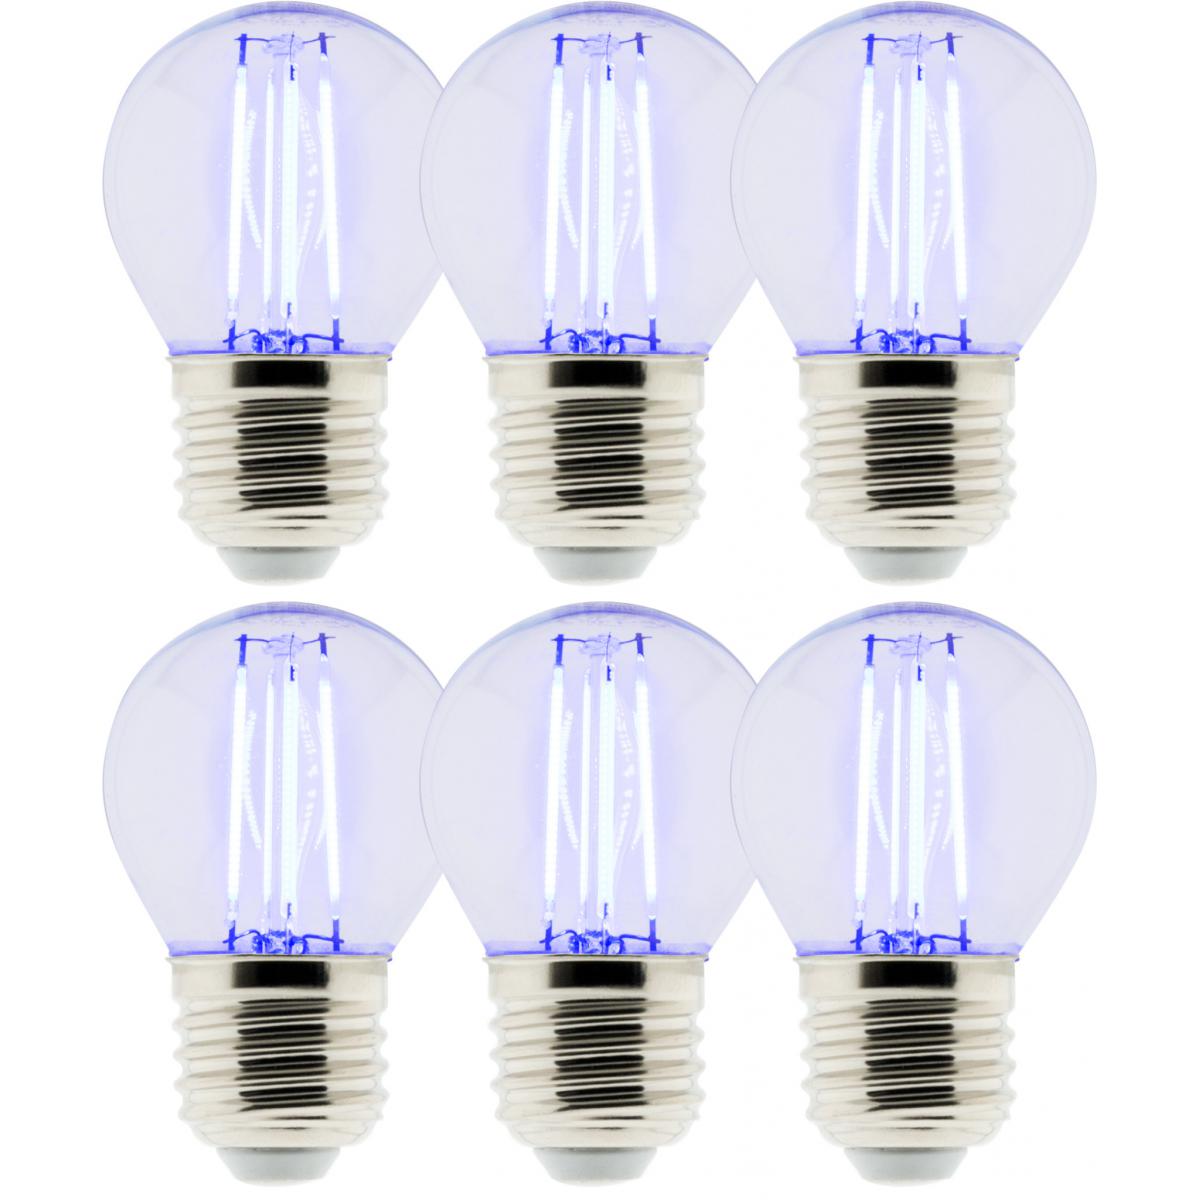 Elexity - Lot de 6 Ampoules LED Déco filament bleu 3W E27 Sphérique - Ampoules LED